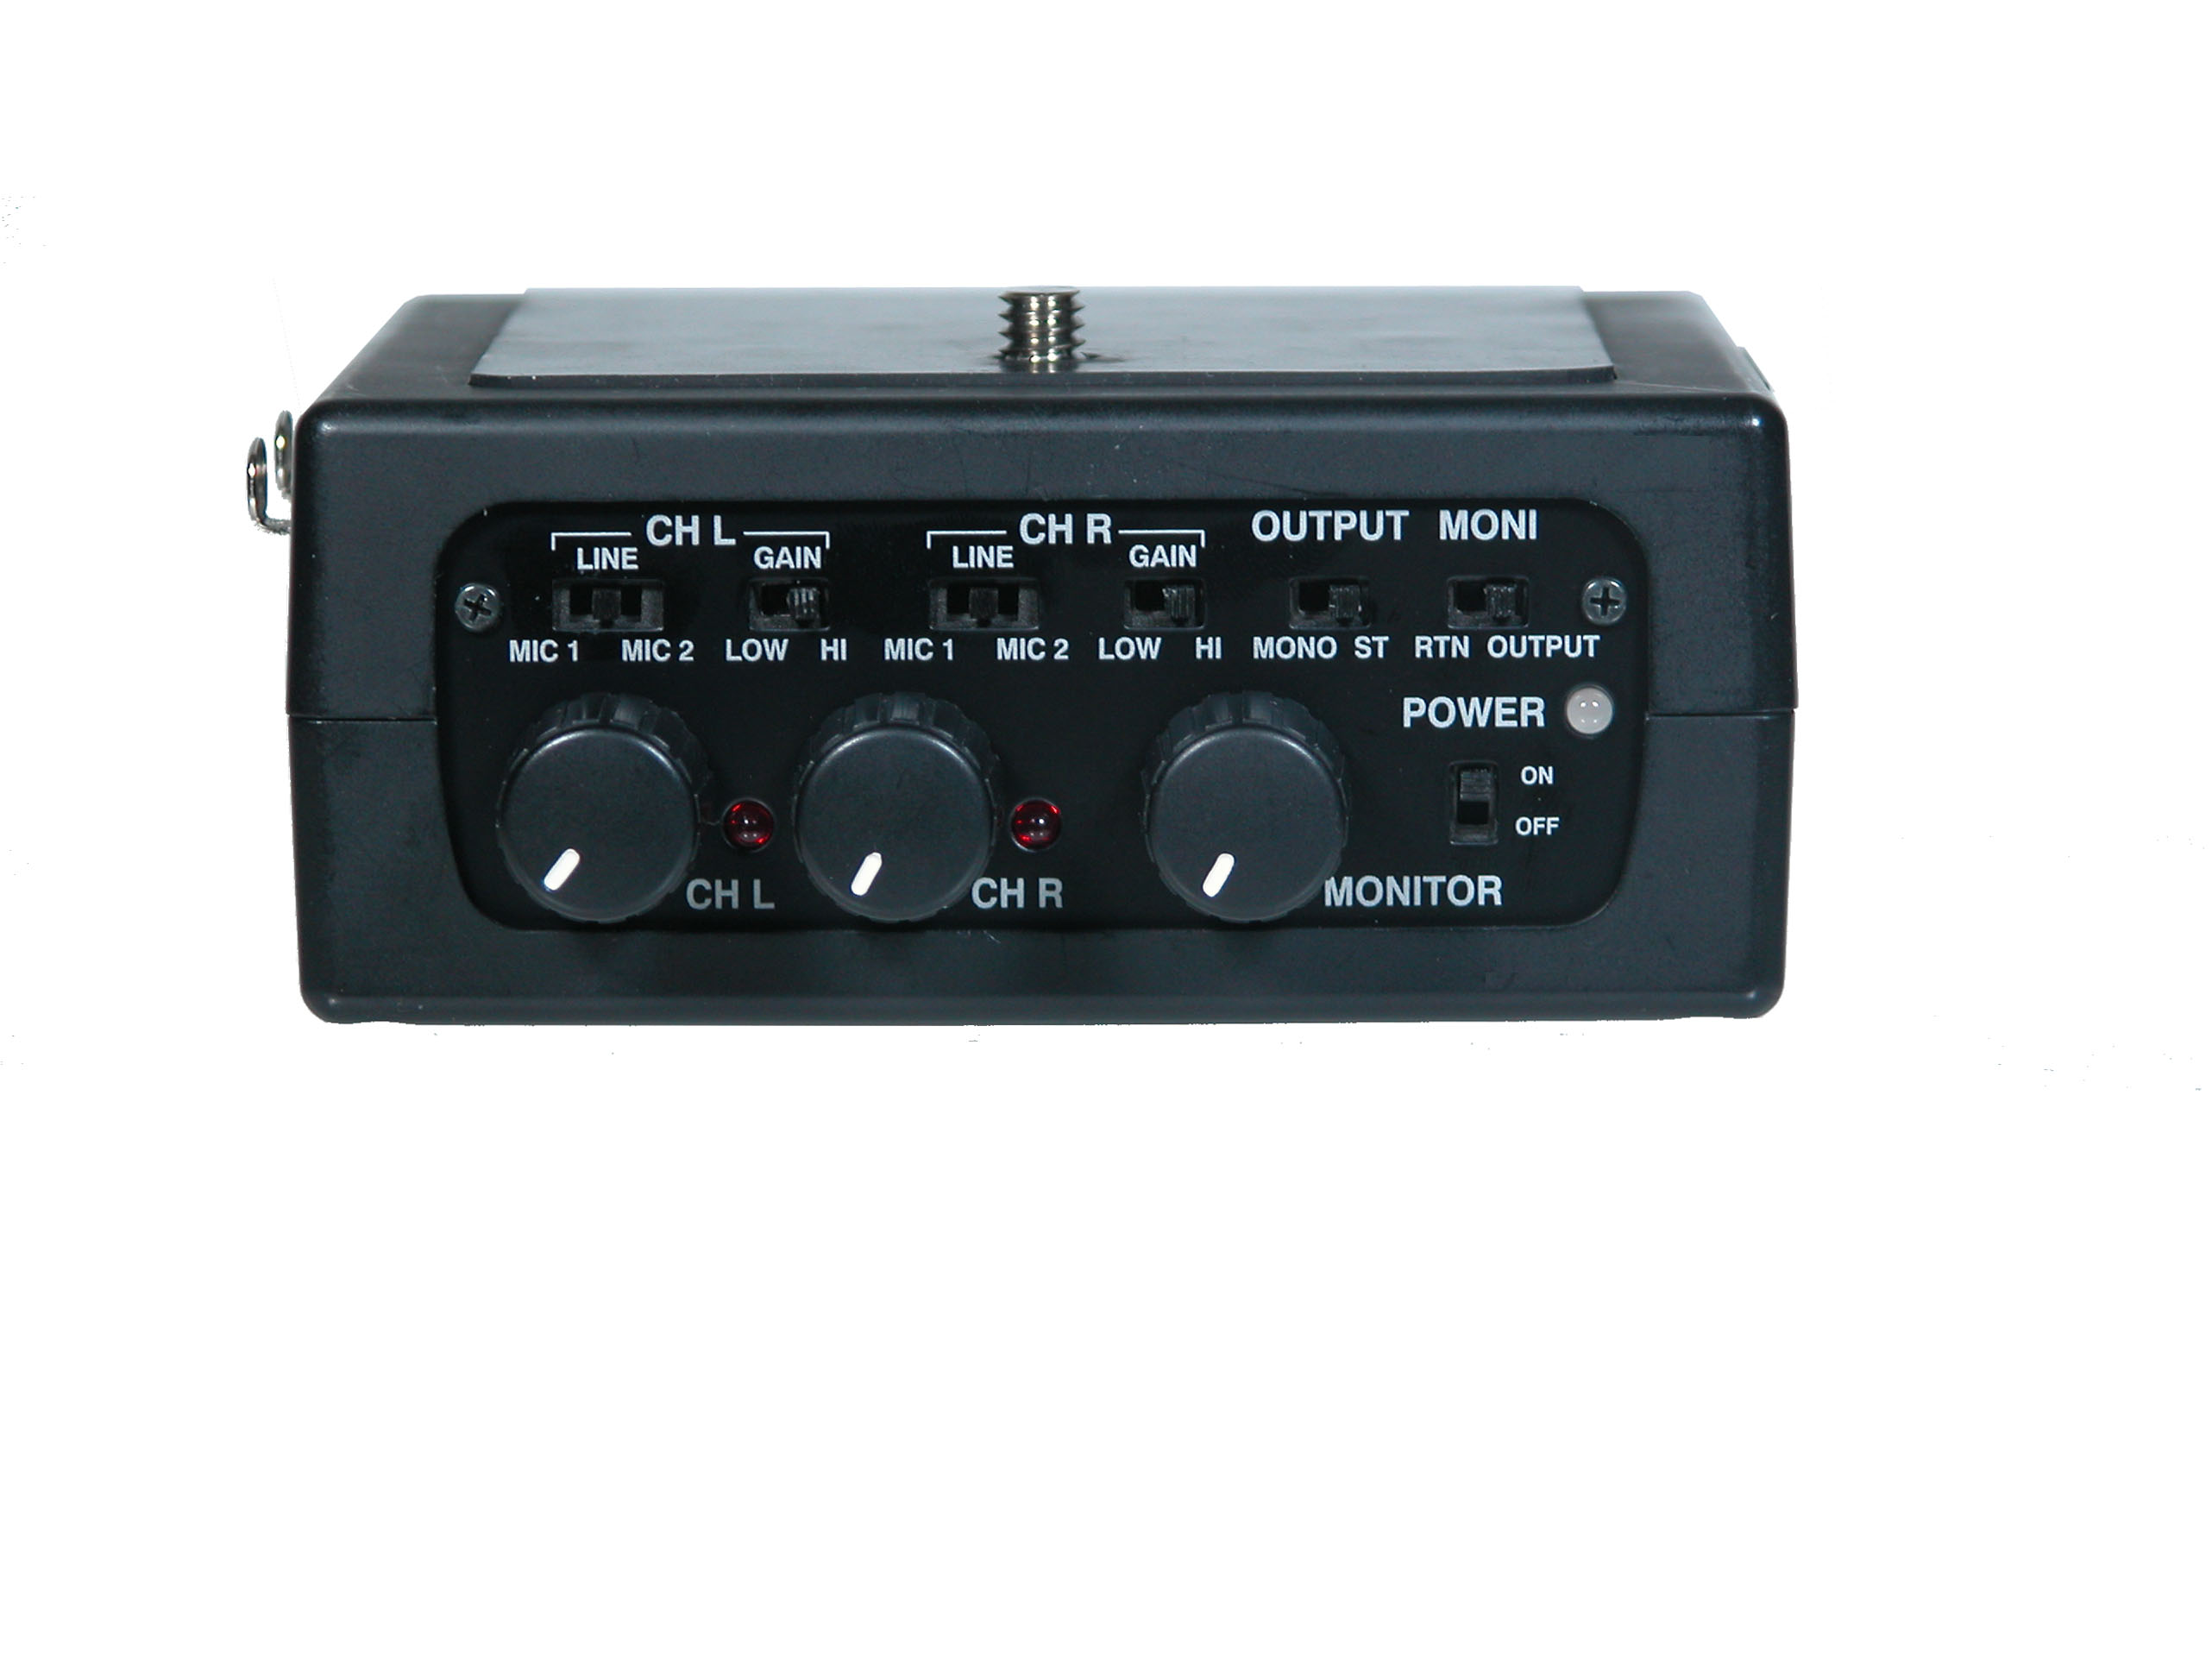 FMX-DSLR - Mixer / Audio Adapter For DSLR Cameras - Azden